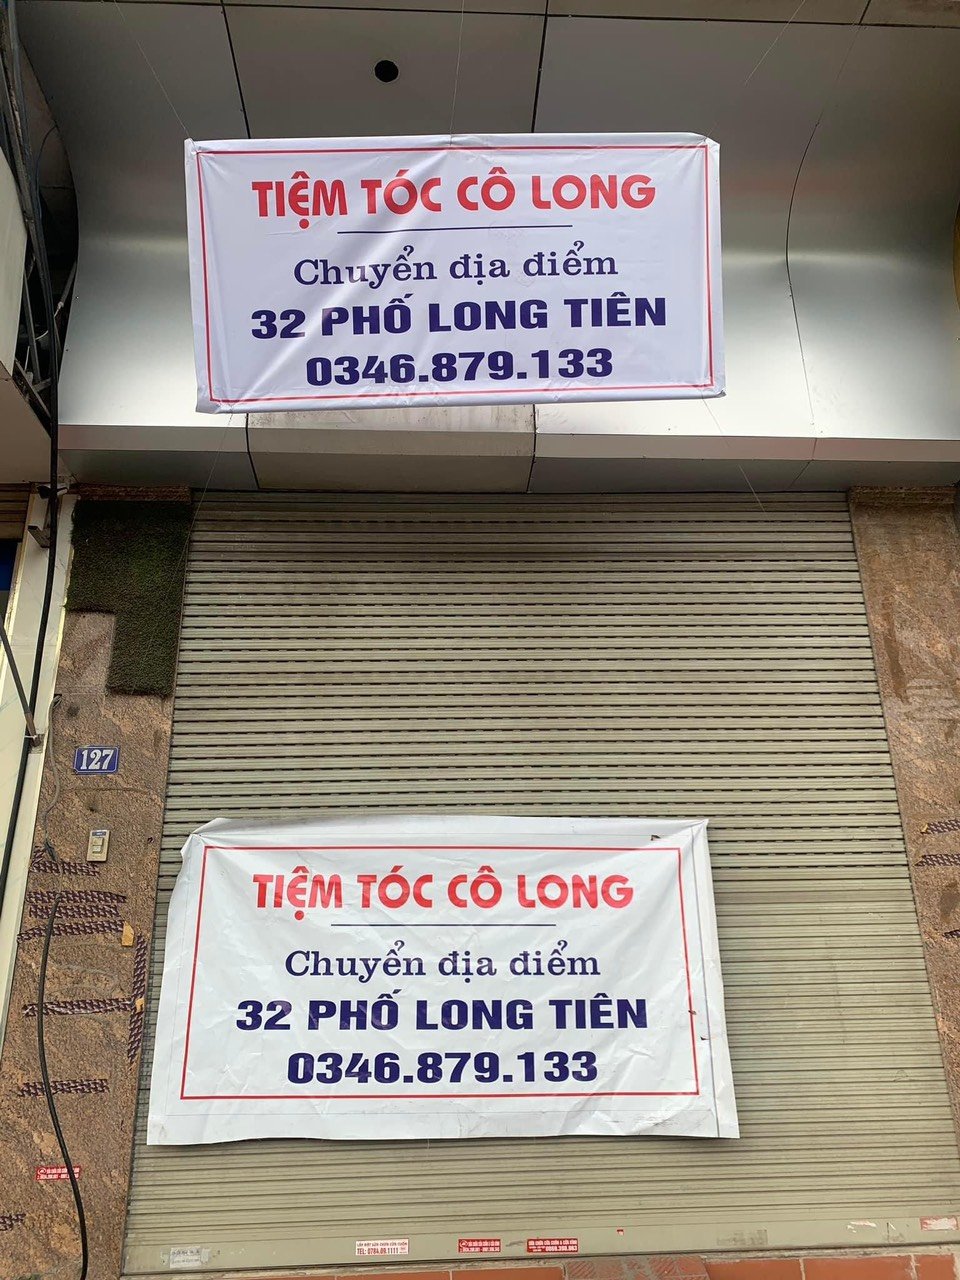 Chính chủ cần cho thuê nhà 5 tầng Thuộc 127 Nguyễn Văn Cừ - Hồng Hải - Hạ Long - Quảng Ninh 1